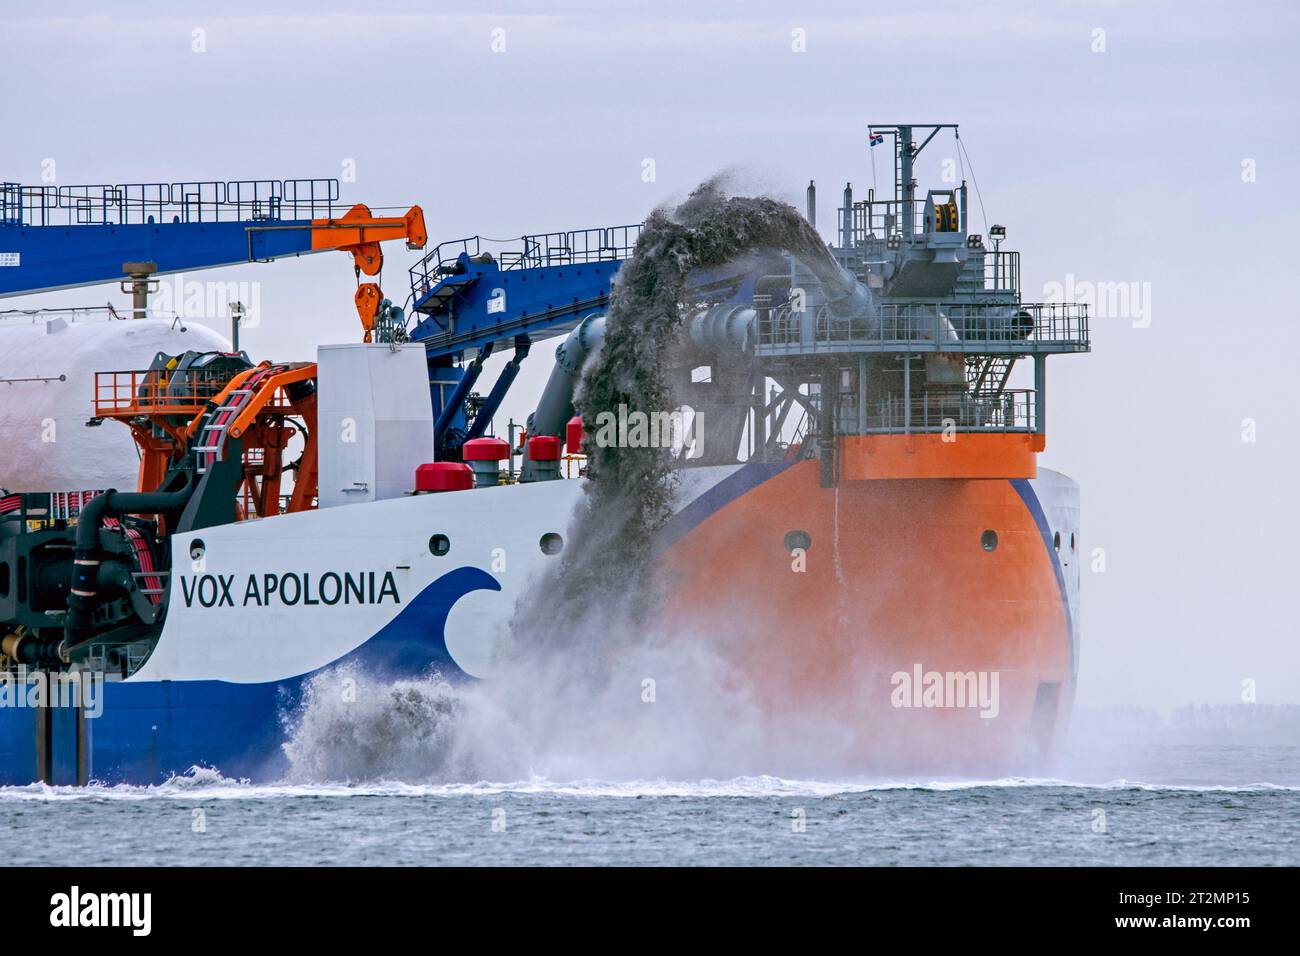 Vox Apolonia von Van Oord, niederländisches maritimes Lohnunternehmen, das sich auf Baggerarbeiten und Regenbogenbagger entlang der Küste Zeelands spezialisiert hat Stockfoto